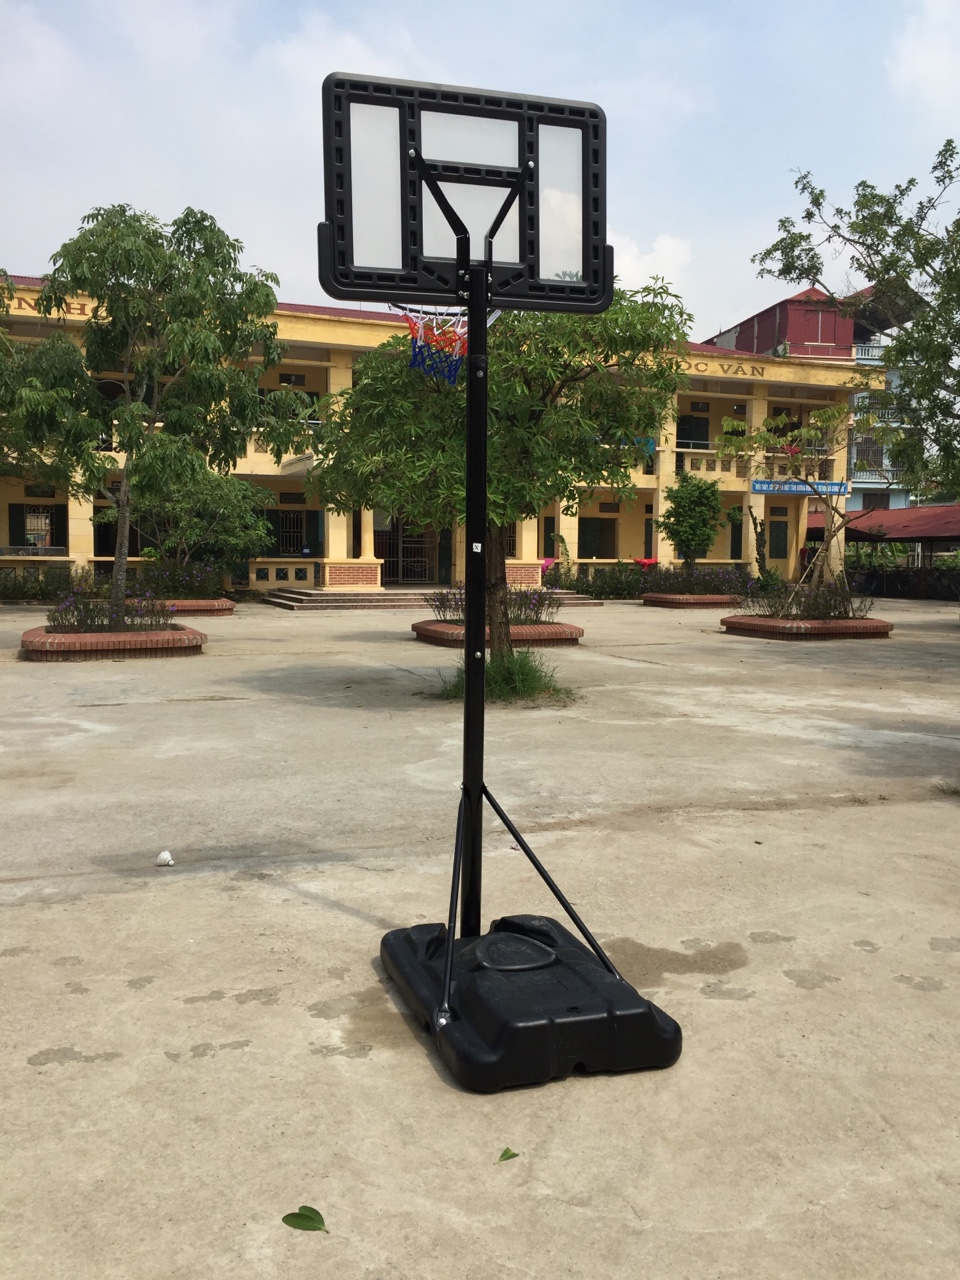 Trụ bóng rổ nhập khẩu SBA021A